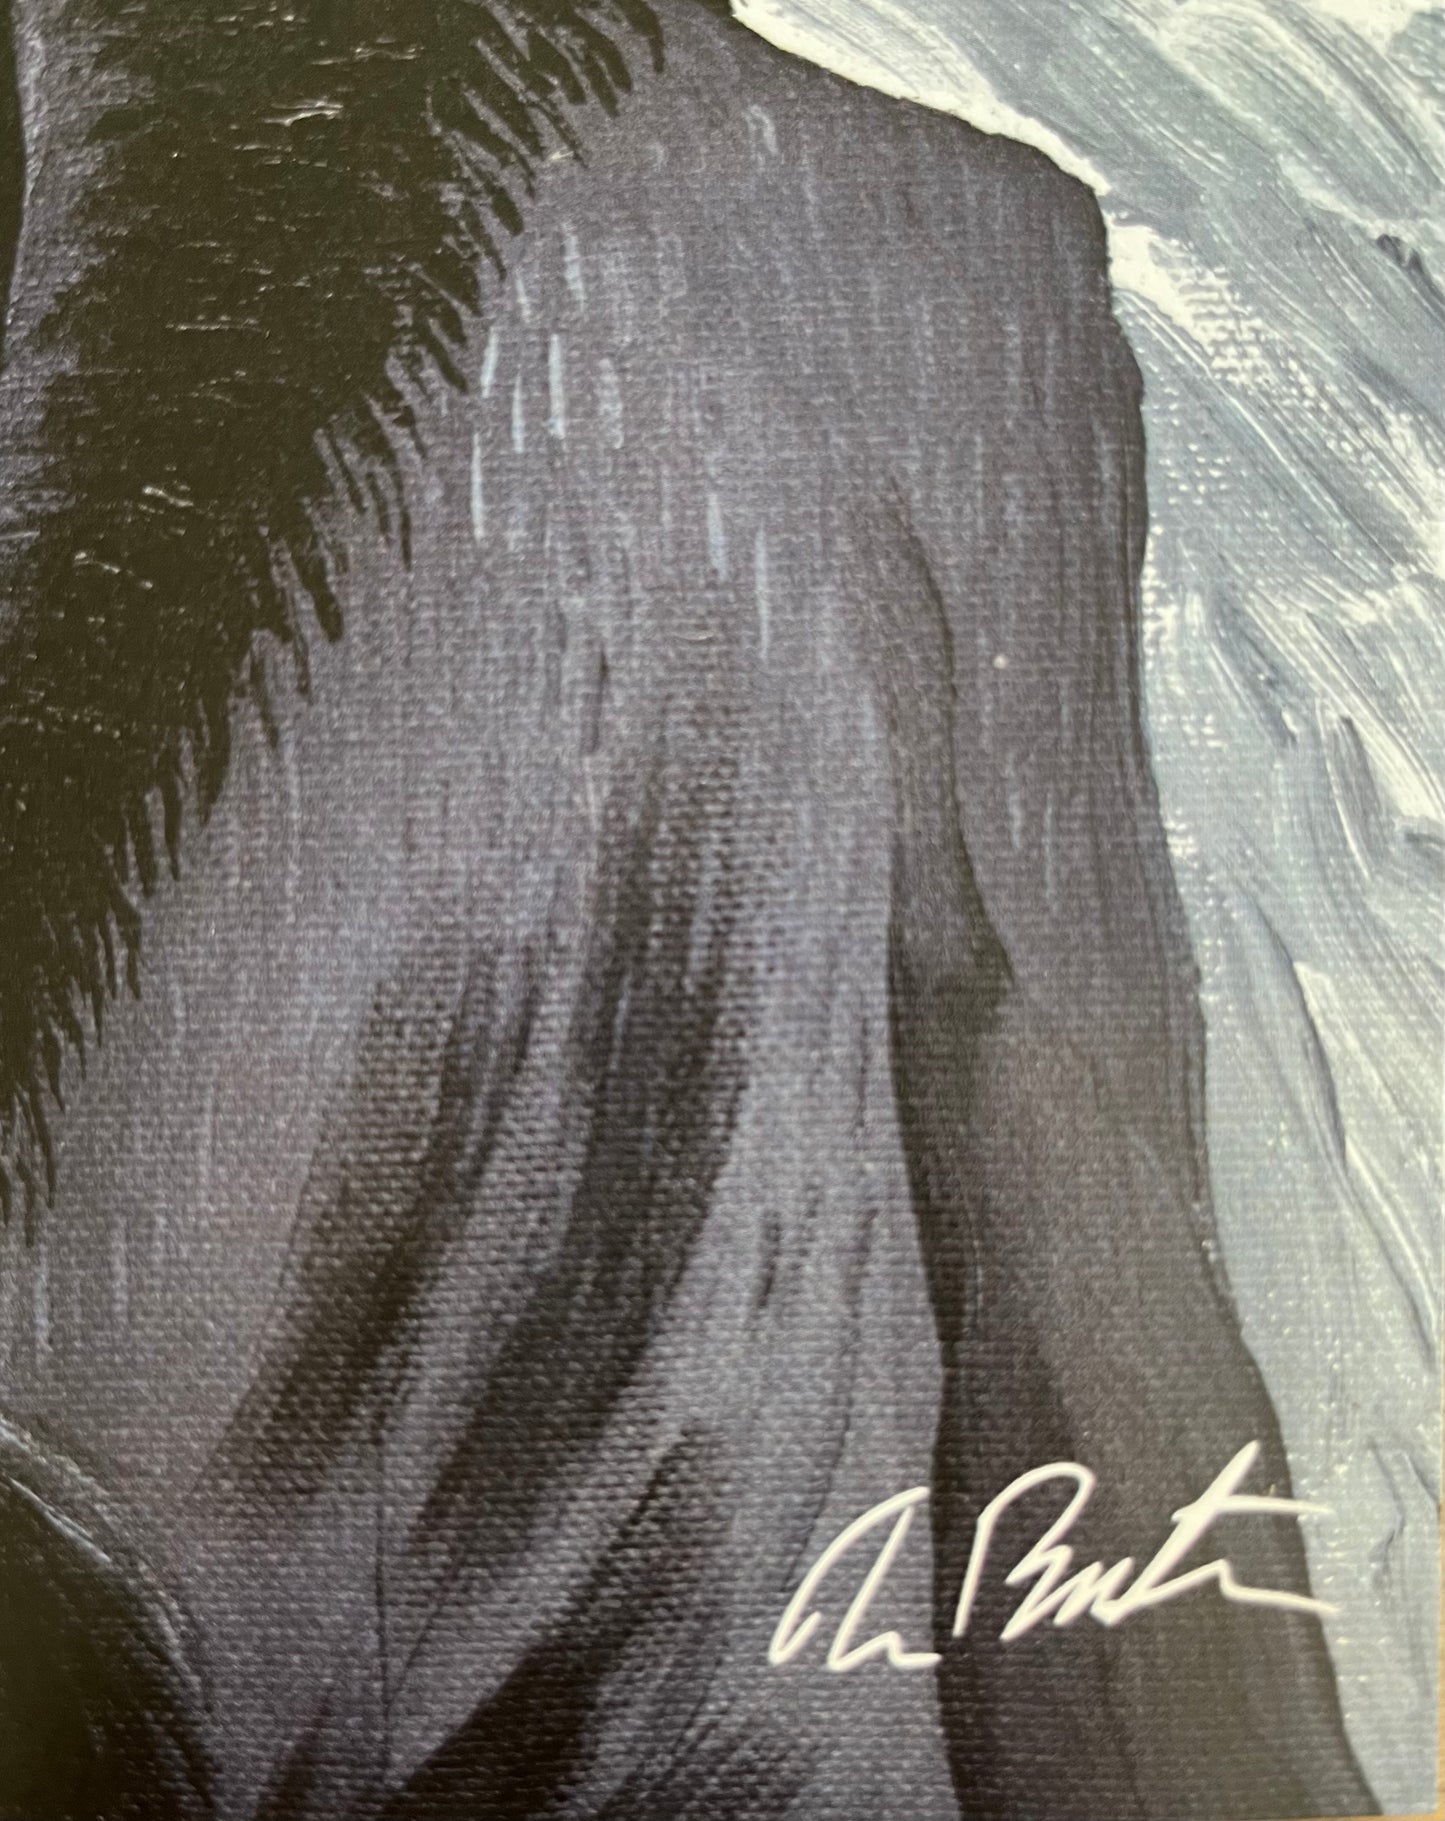 Ensemble de 3 prints officiels signés par Tim Burton